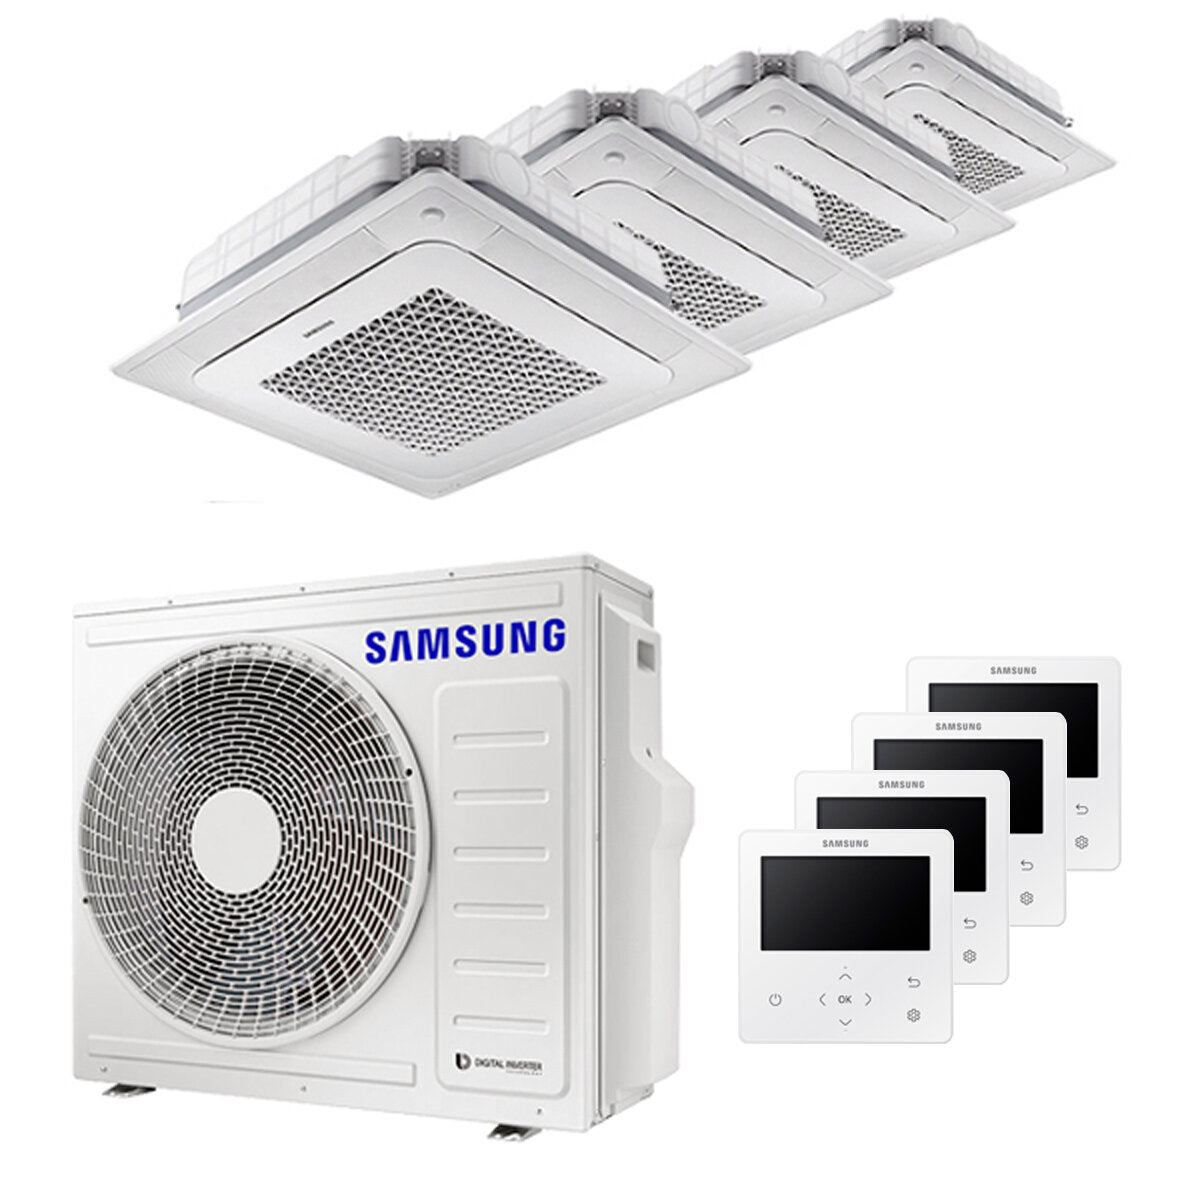 Samsung Climatiseur Windfree 4 voies split carré 7000 + 9000 + 12000 + 12000 BTU inverter A++ unité extérieure 8,0 kW